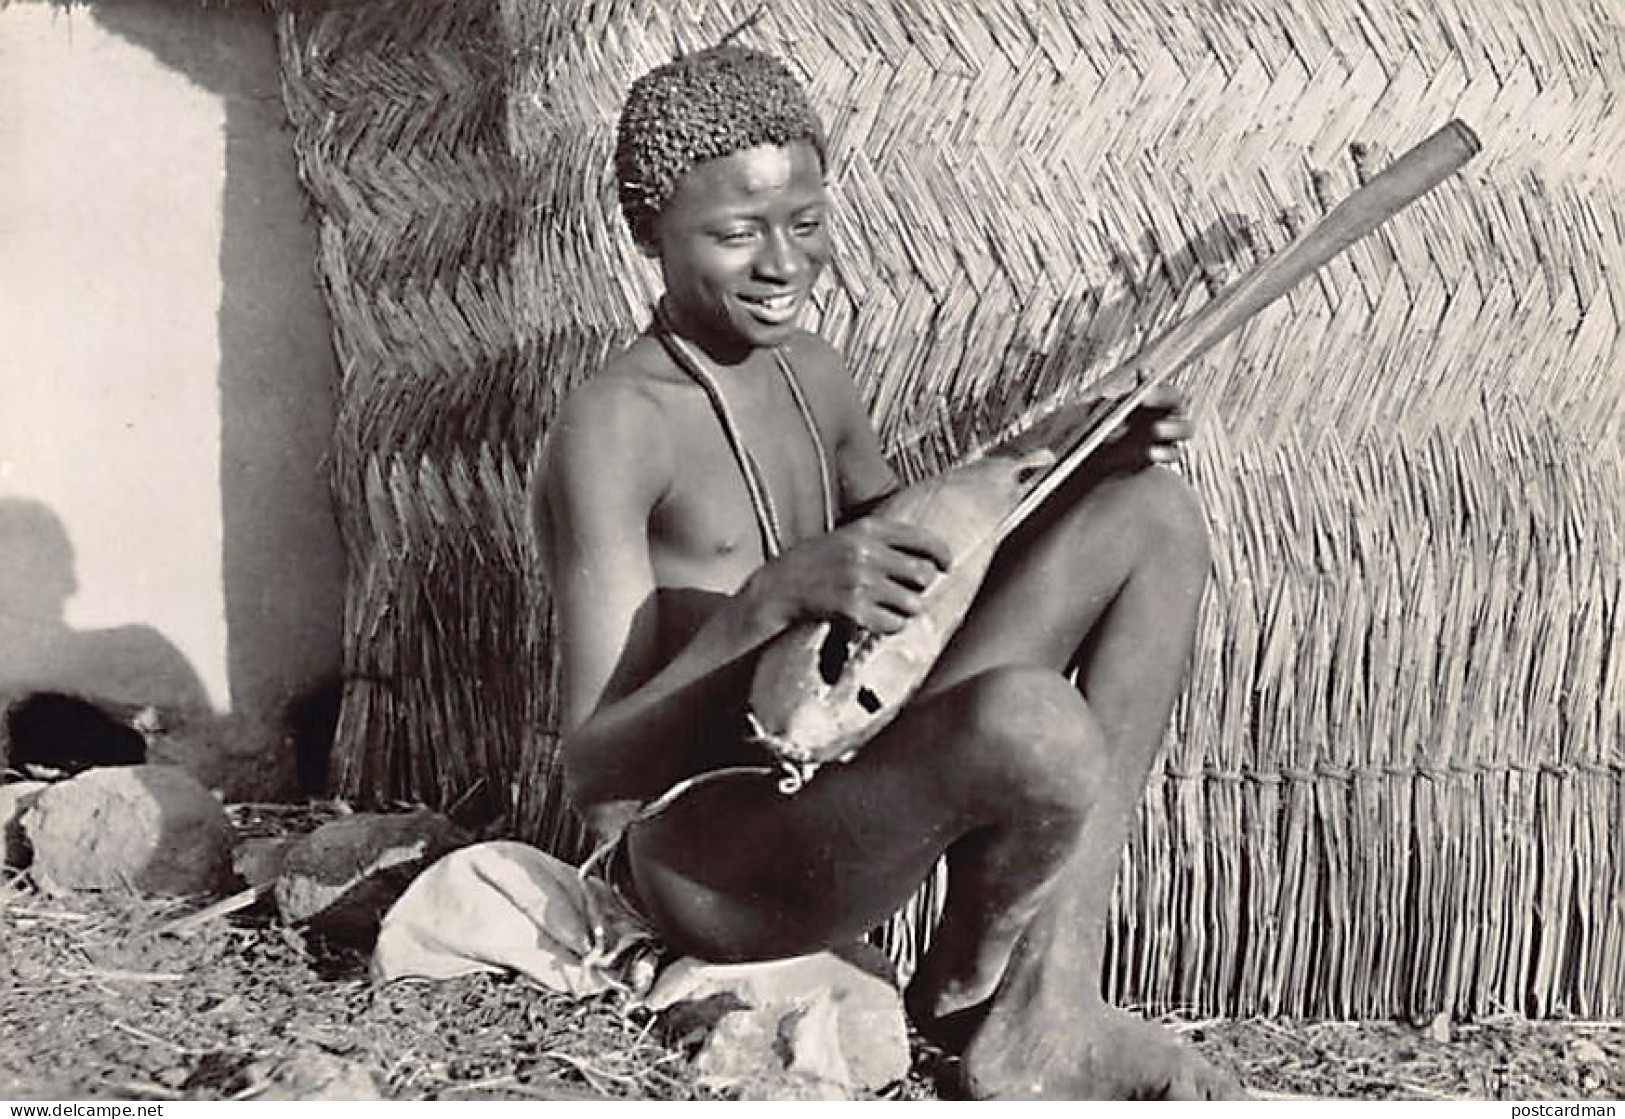 Cameroun - Musicien Fali - TAILLE DE LA CARTE POSTALE 15 Cm. Par 10 Cm. - POSTCARD SIZE 15 Cm. By 10 Cm. (5.9 In By 3.9  - Kamerun